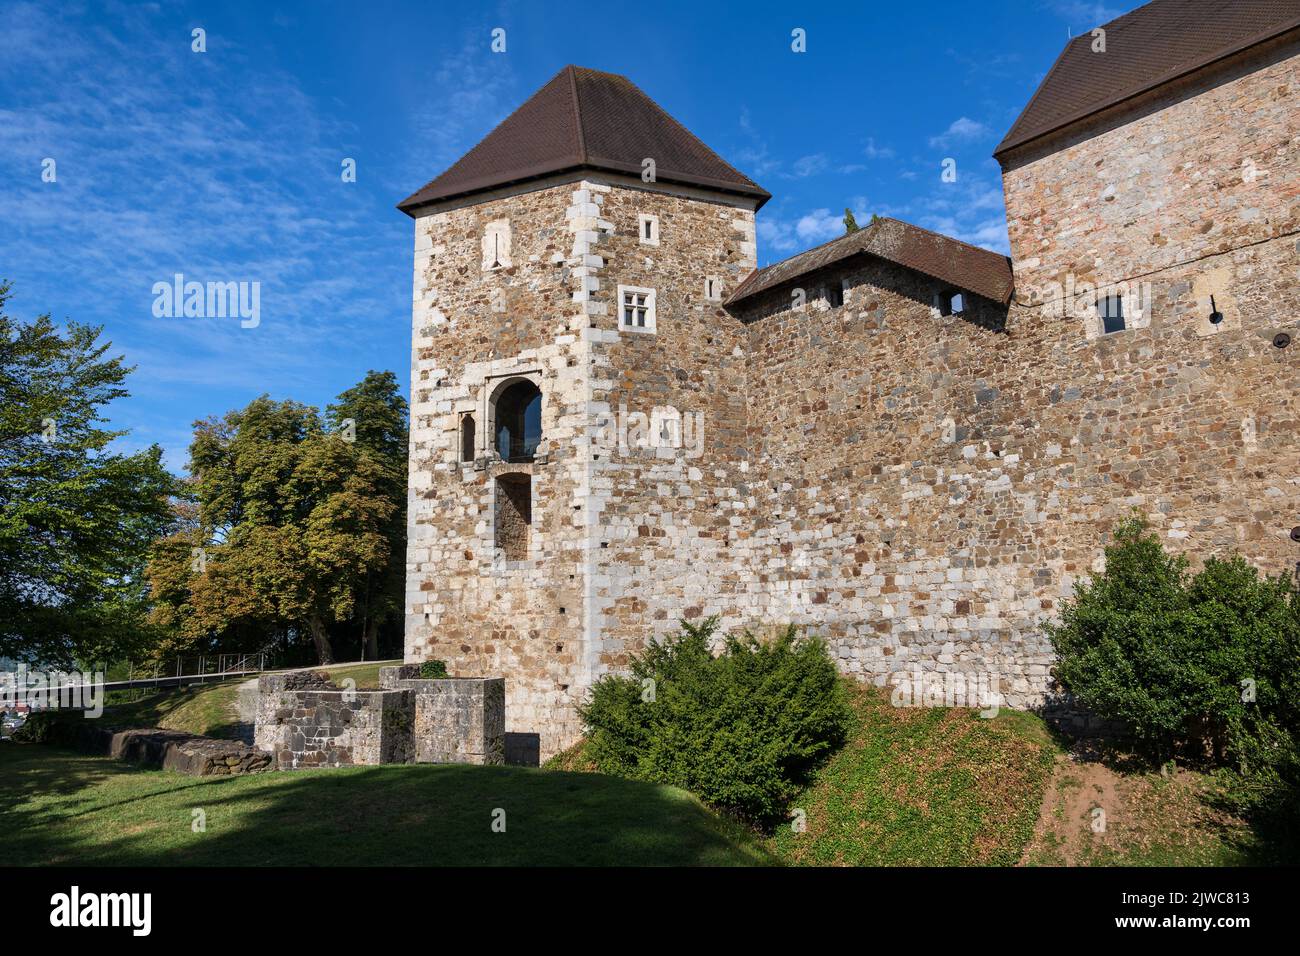 Burg von Ljubljana in der Stadt Ljubljana, Slowenien. Mittelalterliche Steinburg aus dem 11.. Jahrhundert. Stockfoto